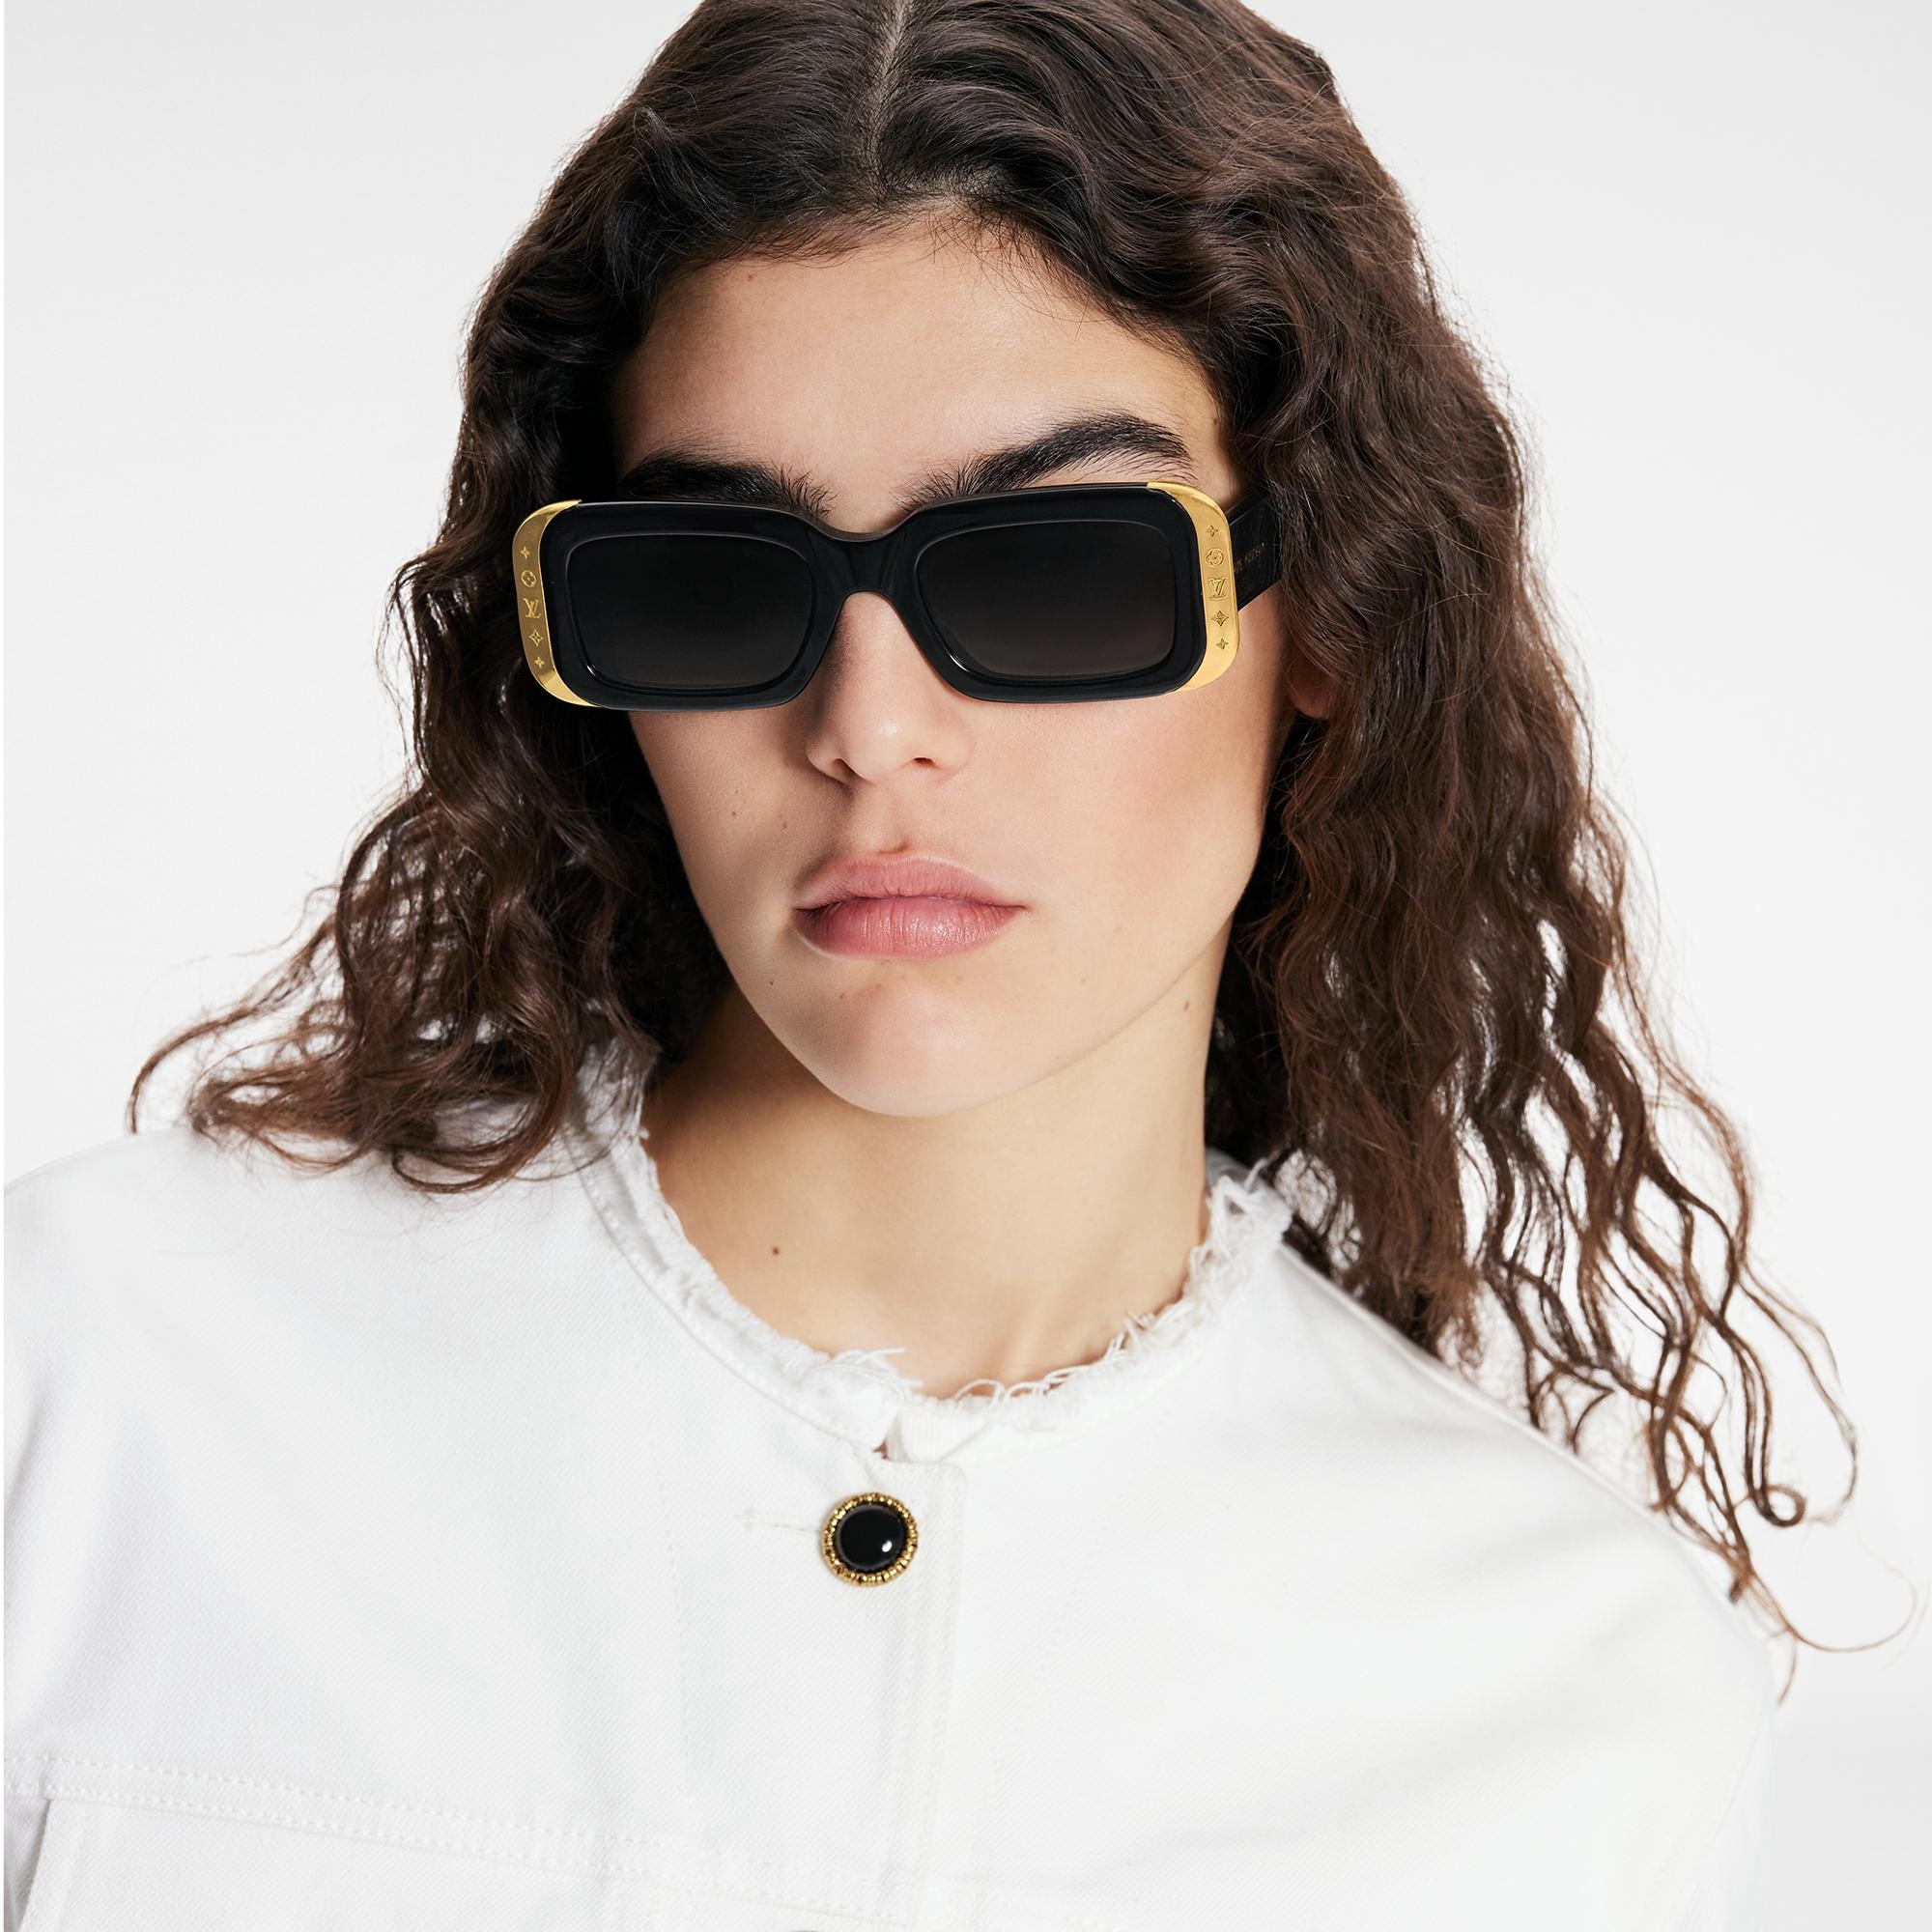 Louis Vuitton LV Link Square Sunglasses Black Acetate. Size W